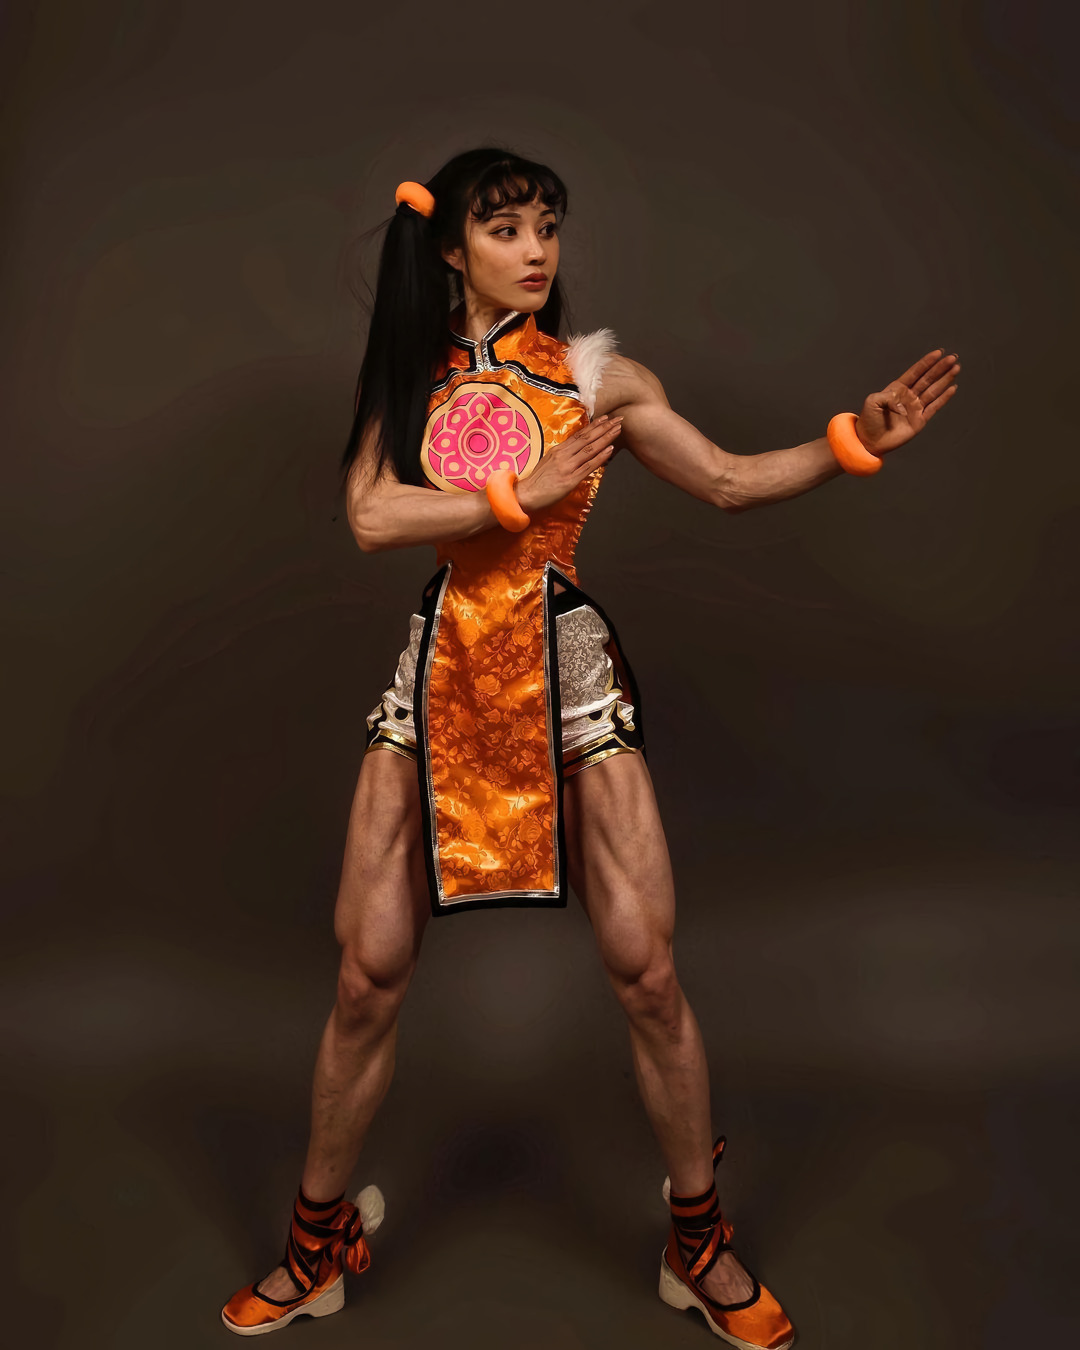 Yuan Herong косплеит Лин Сяоюй из игры Tekken | Пикабу